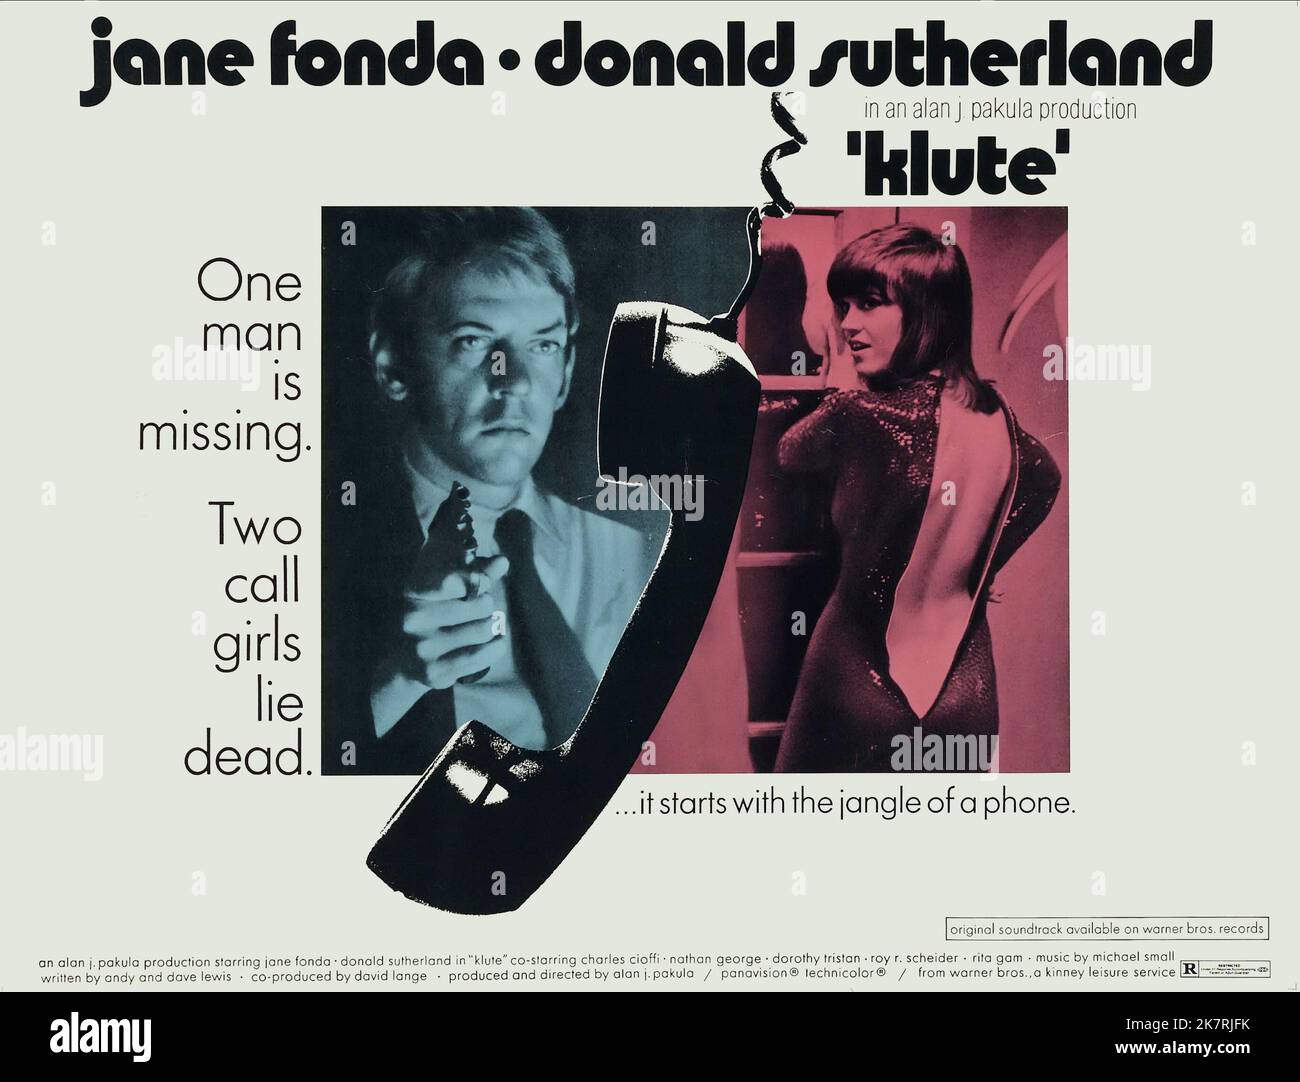 Donald Sutherland & Jane Fonda Poster Film: Klute (USA 1971) Charaktere: John Klute, Bree Daniels Regie: Alan J. Pakula 23 June 1971 **WARNUNG** Dieses Foto ist nur für redaktionelle Zwecke bestimmt und unterliegt dem Copyright von WARNER BROS und/oder des Fotografen, der von der Film- oder Produktionsfirma beauftragt wurde, und kann nur von Publikationen im Zusammenhang mit der Bewerbung des oben genannten Films reproduziert werden. Eine obligatorische Gutschrift an WARNER BROS ist erforderlich. Der Fotograf sollte auch bei Bekanntwerden des Fotos gutgeschrieben werden. Ohne schriftliche Genehmigung der Film Company kann keine kommerzielle Nutzung gewährt werden. Stockfoto